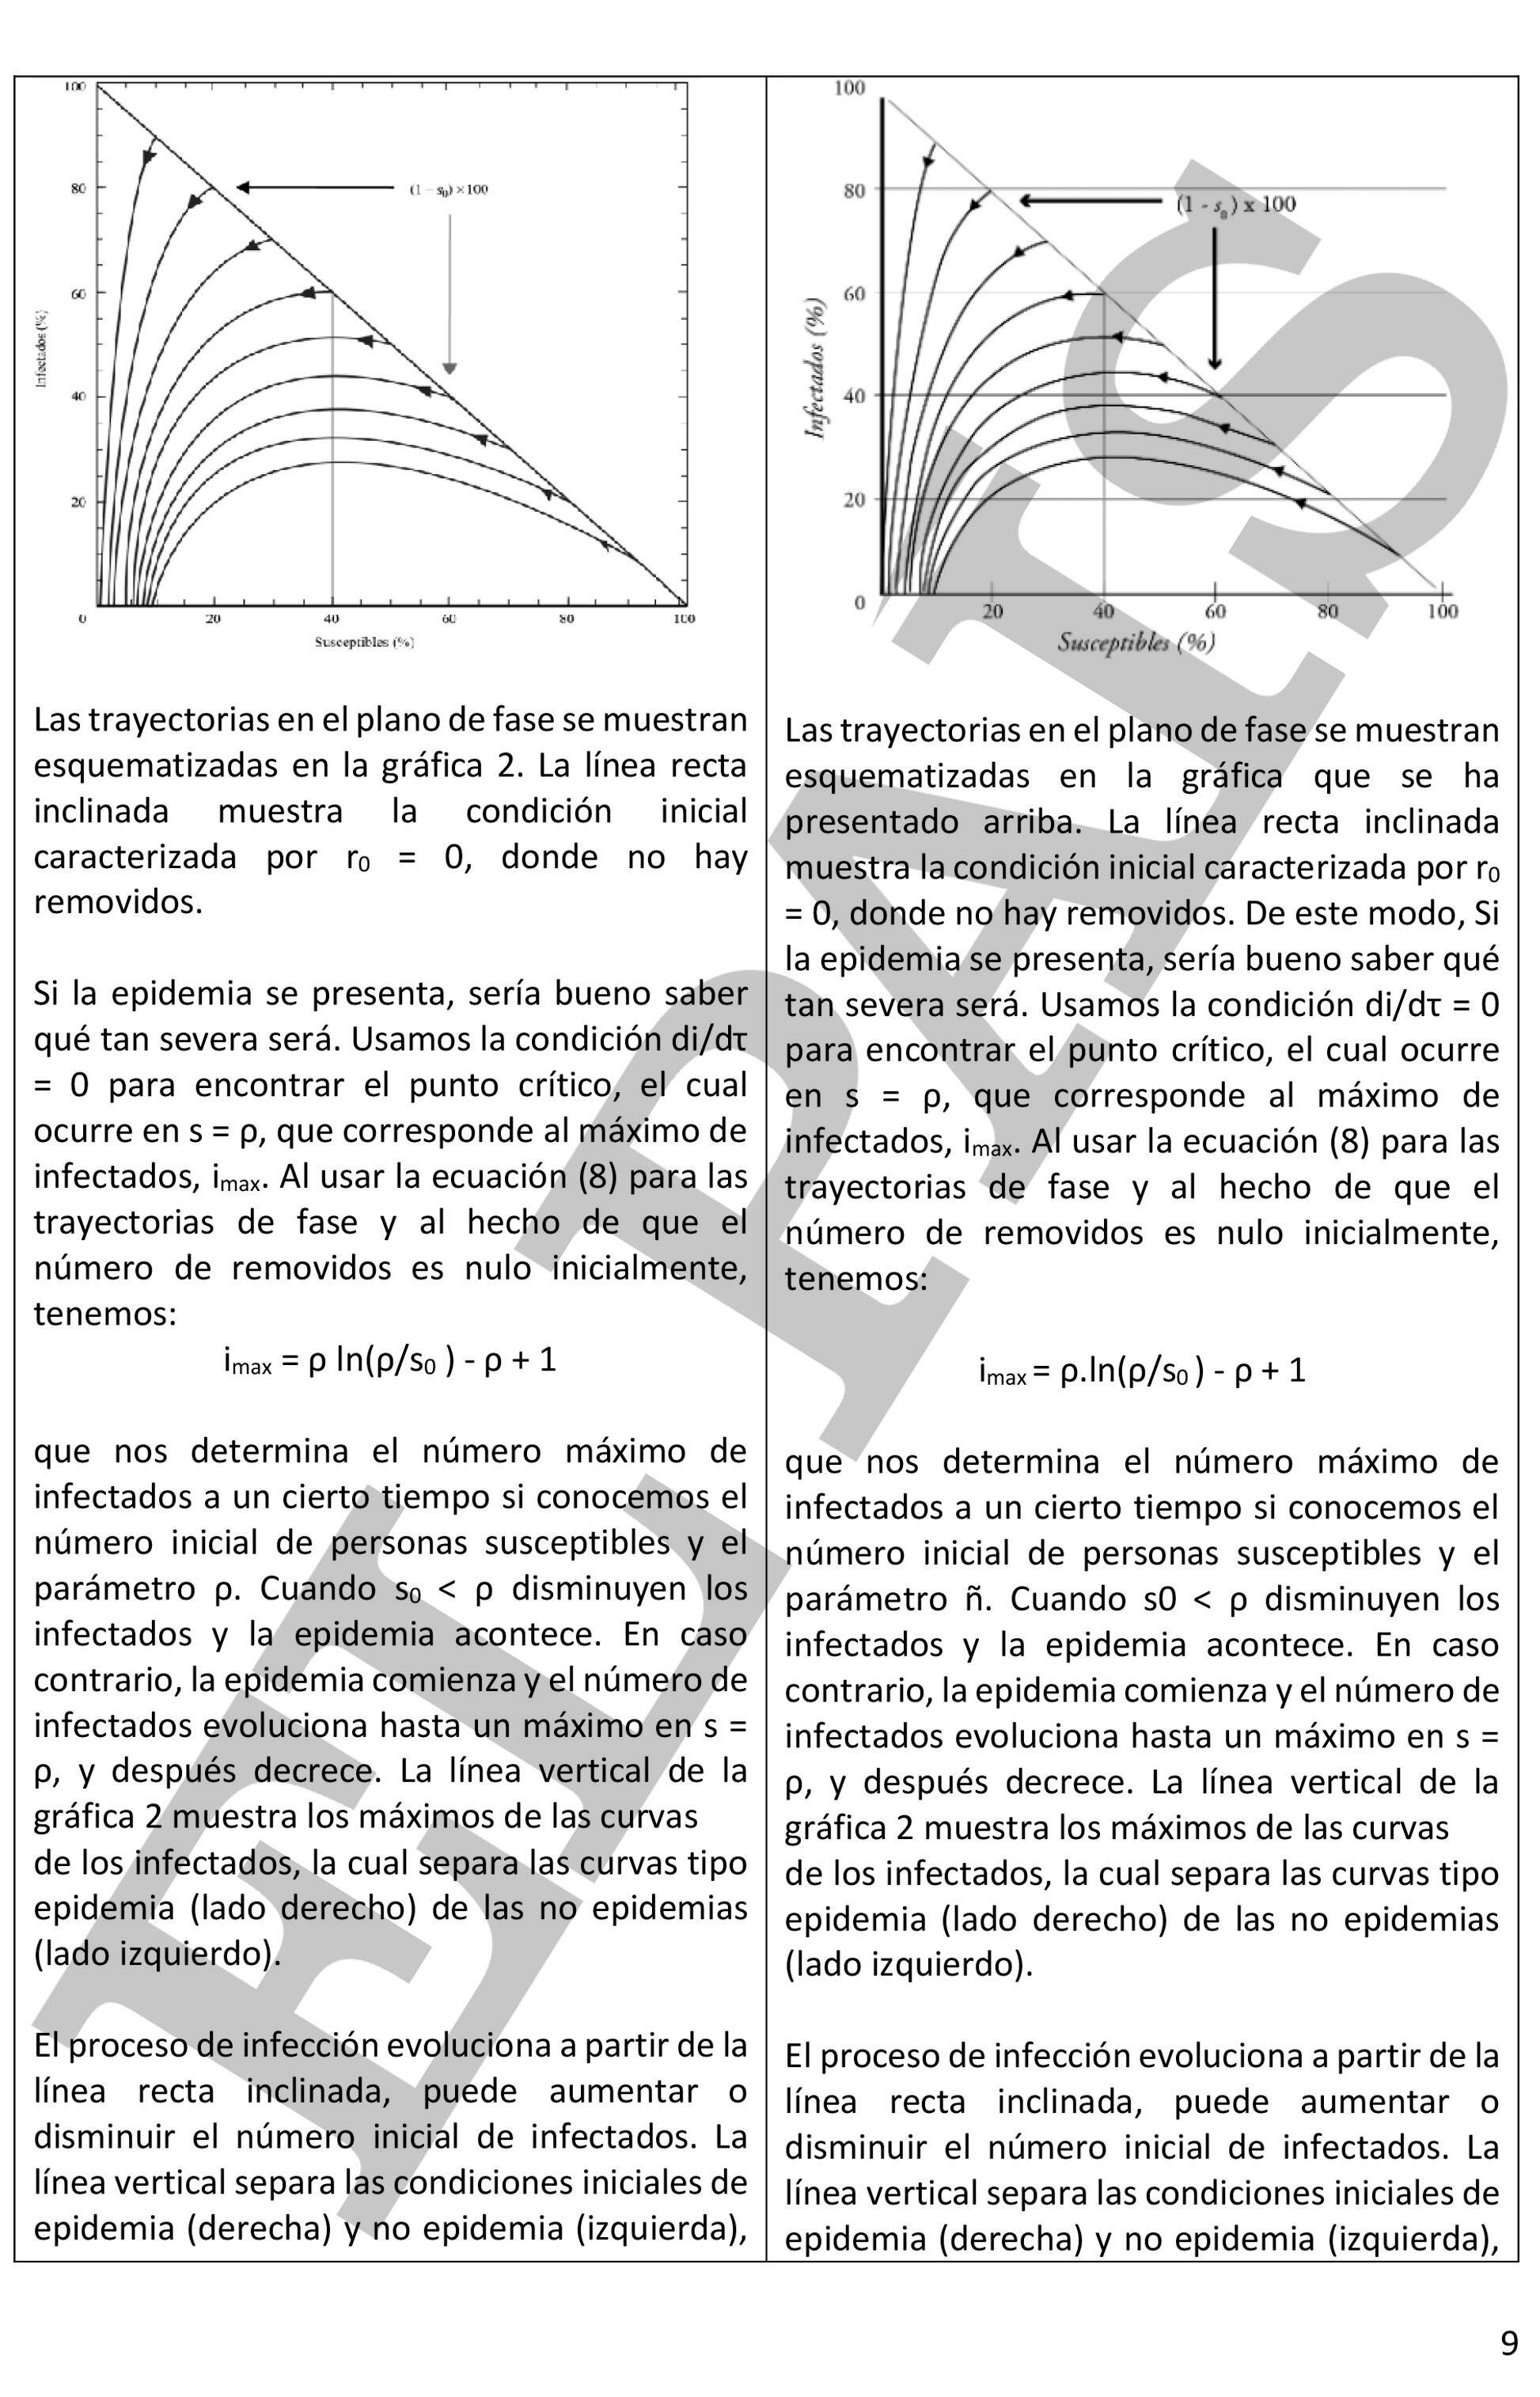 Una comparación entre una página de los textos de los científicos mexicanos y de Milei, con la misma gráfica en la parte superior.